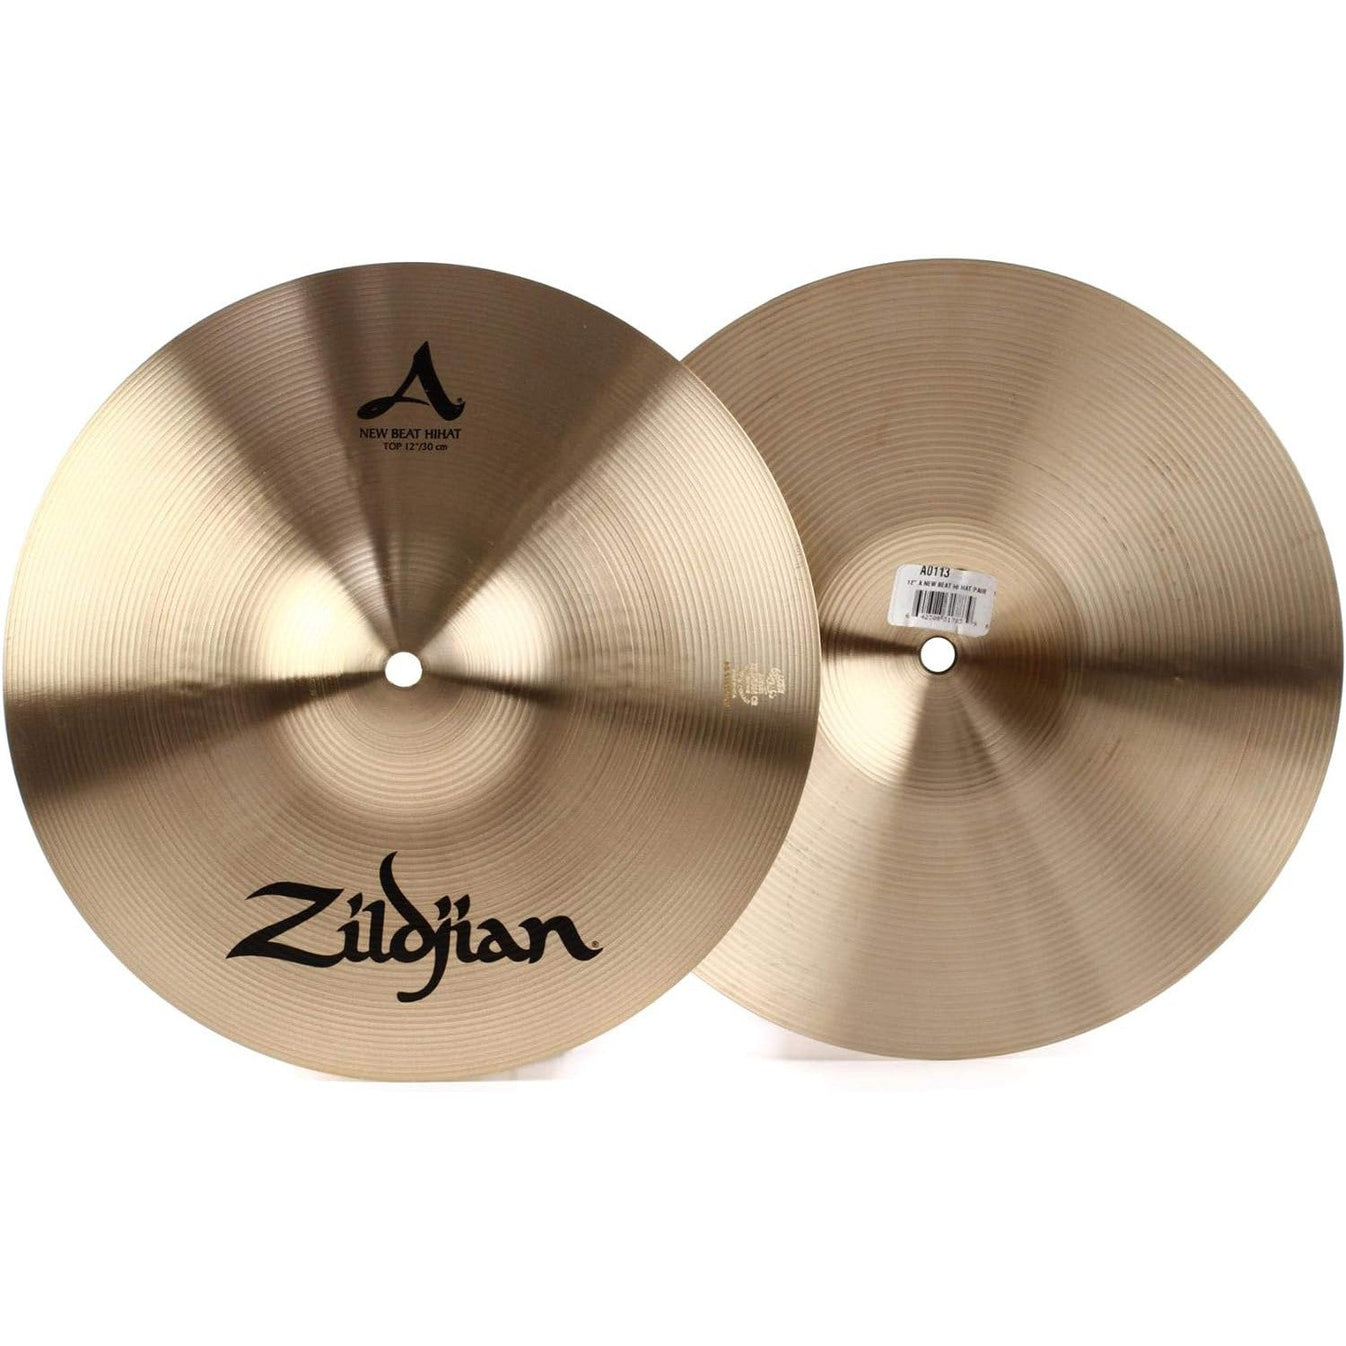 Hi-hat Cymbal Zildjian A Zildjian New Beat-Mai Nguyên Music